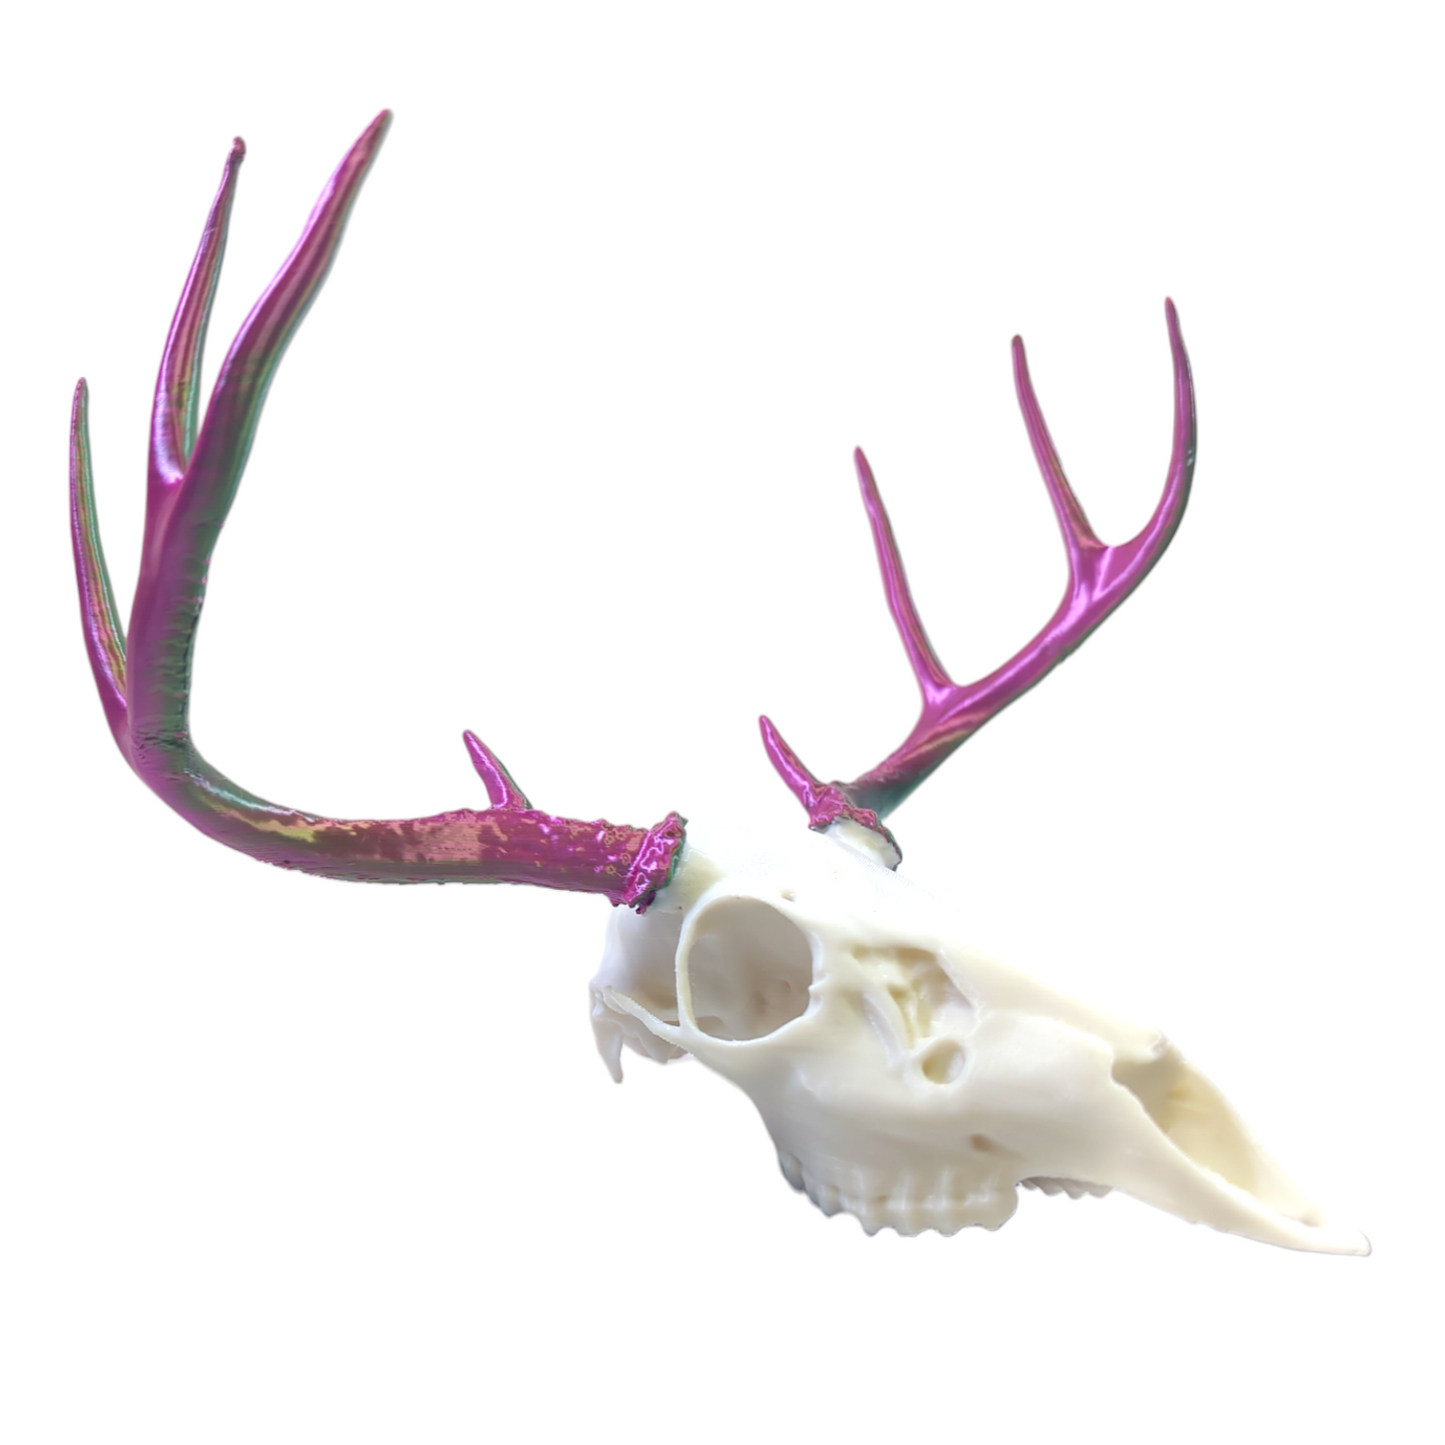 White Tail Deer Skull, PLA print, 2-tone antler, unpainted decorative skull.